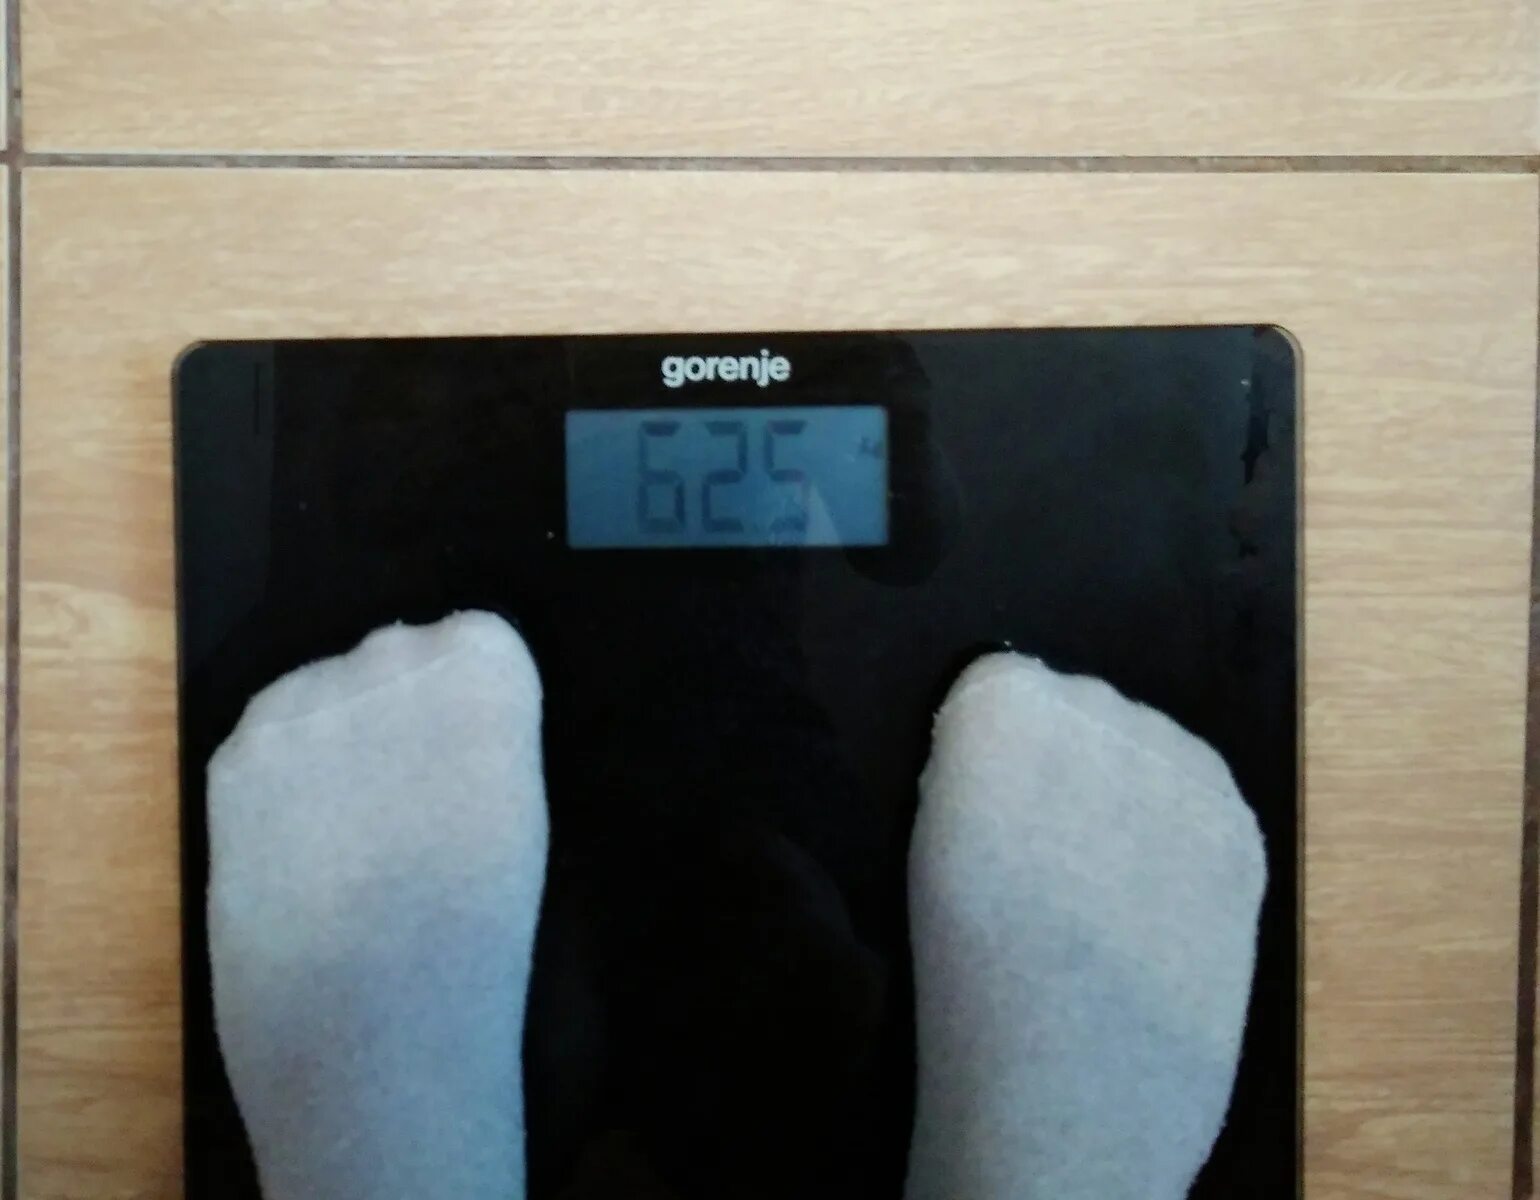 60 кг 500 г. Весы 60 кг. Вес 60 кг весы. Цифры на весах. Весы 62 кг.